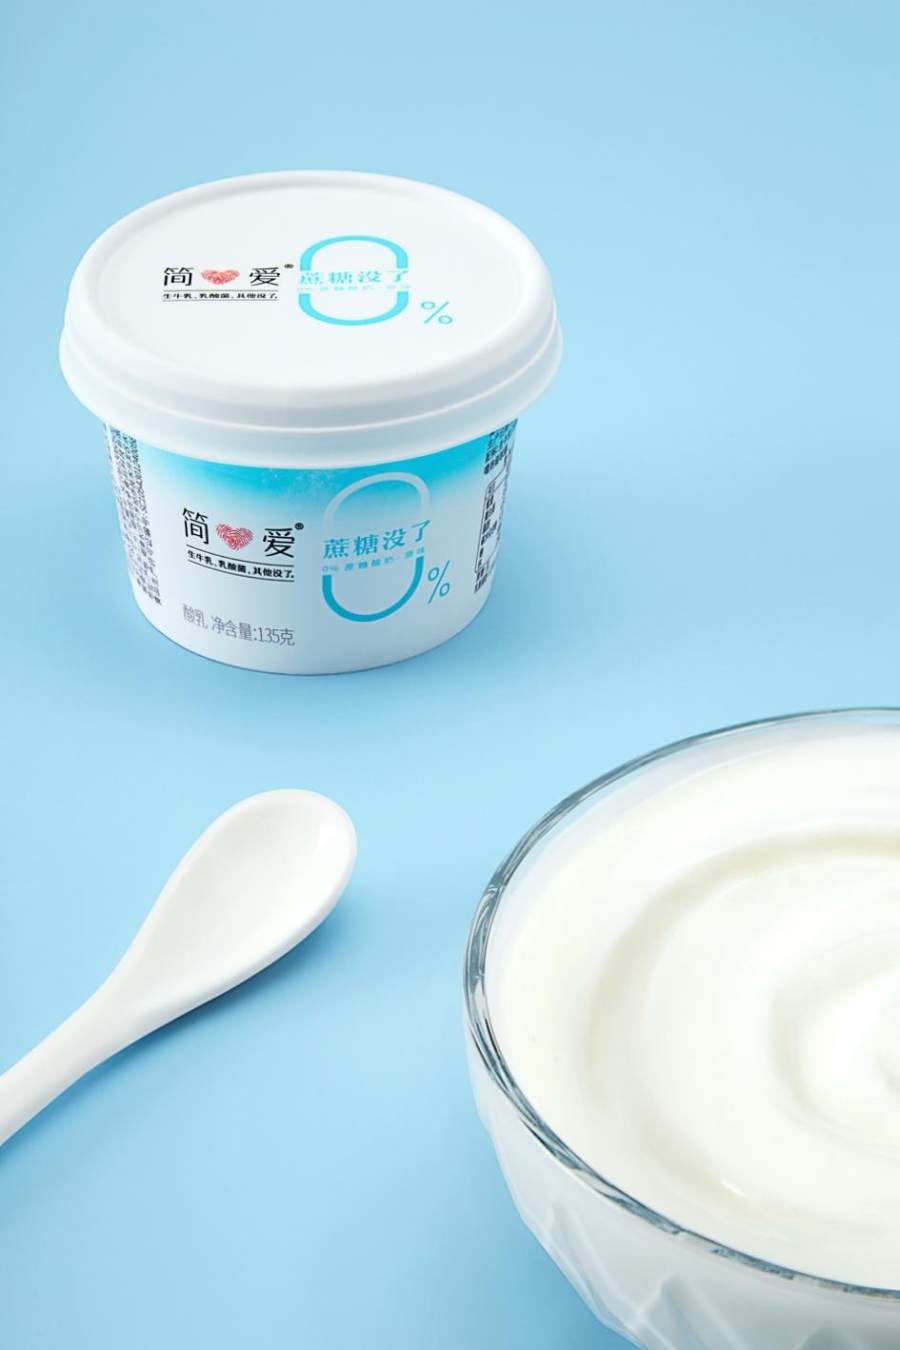 简爱酸奶打造“超级”供应链 夯实低温酸奶第一品牌